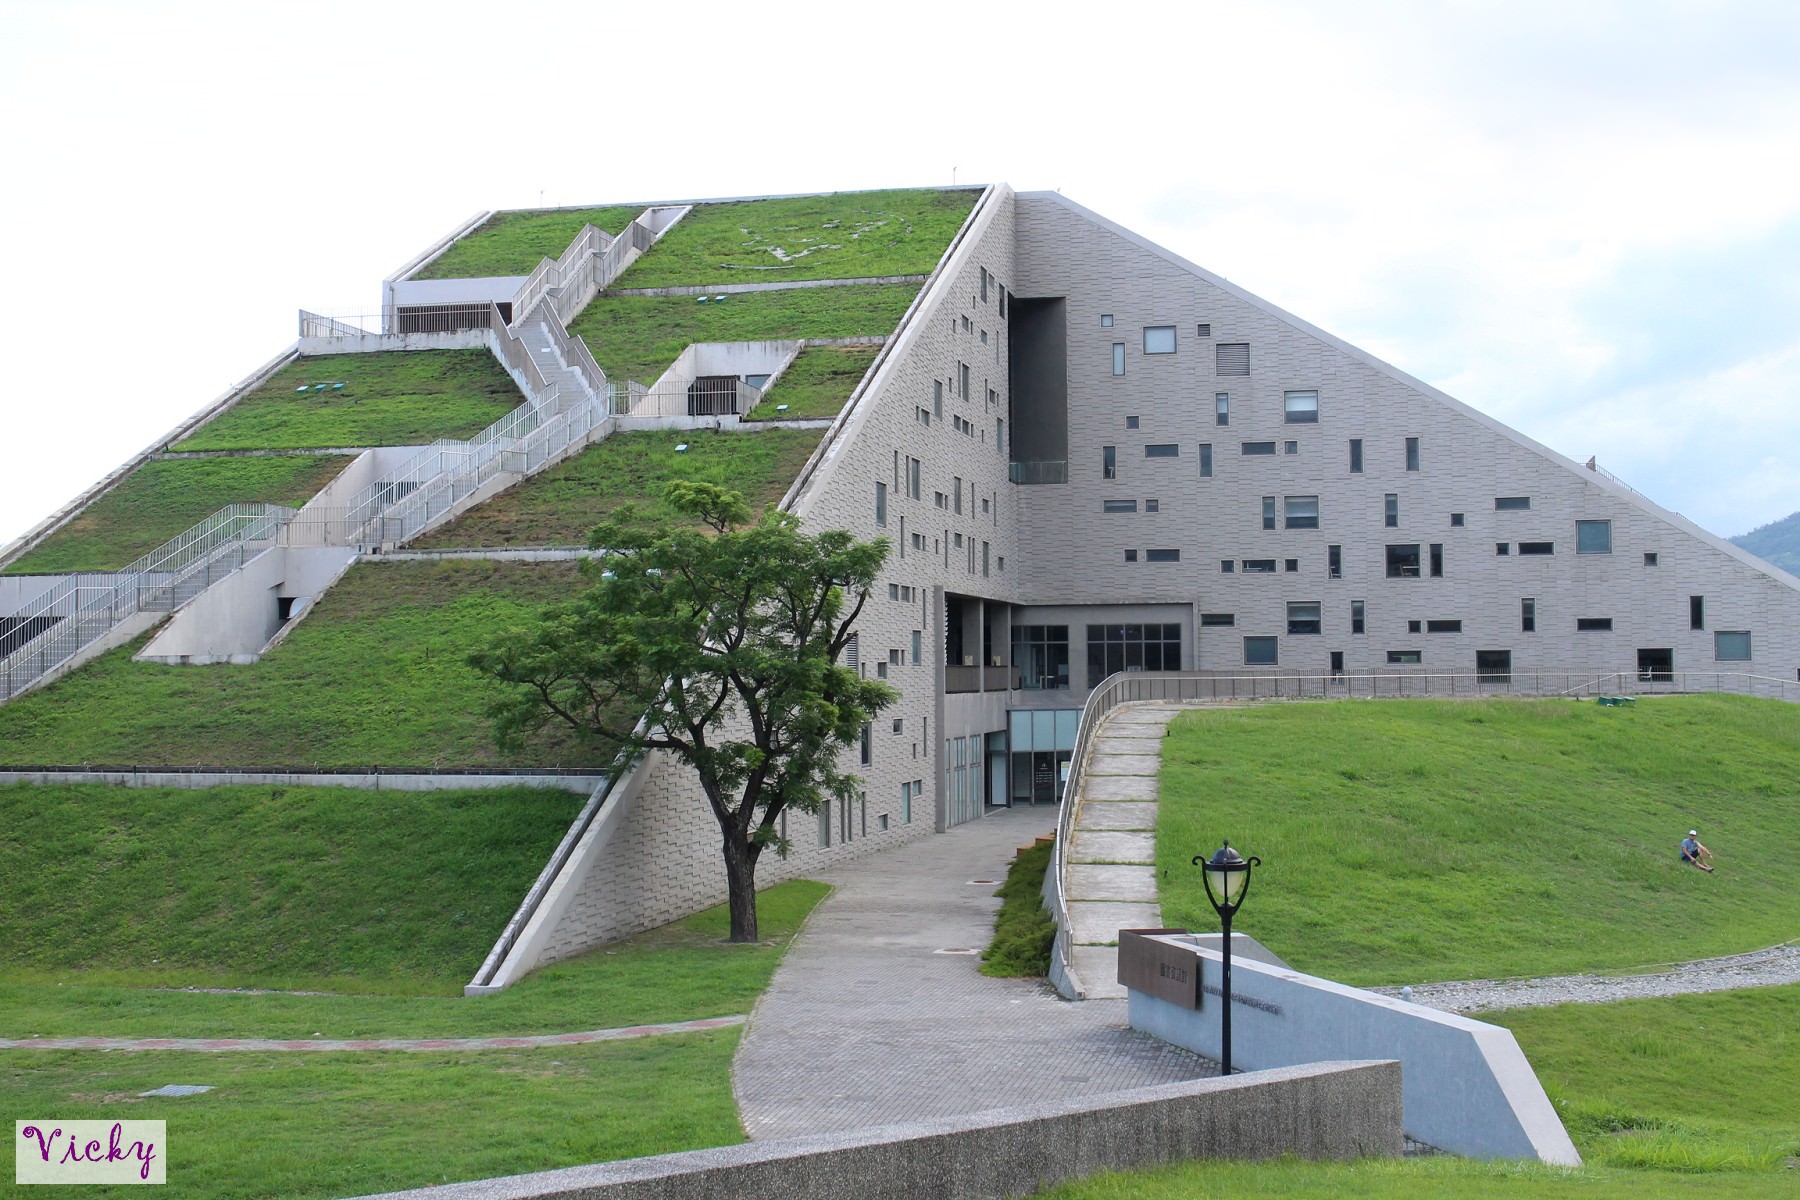 台東大學圖資館：看山不是山，看水澄如鏡，此館獲得國際網站列為全球8座獨特圖書館之一